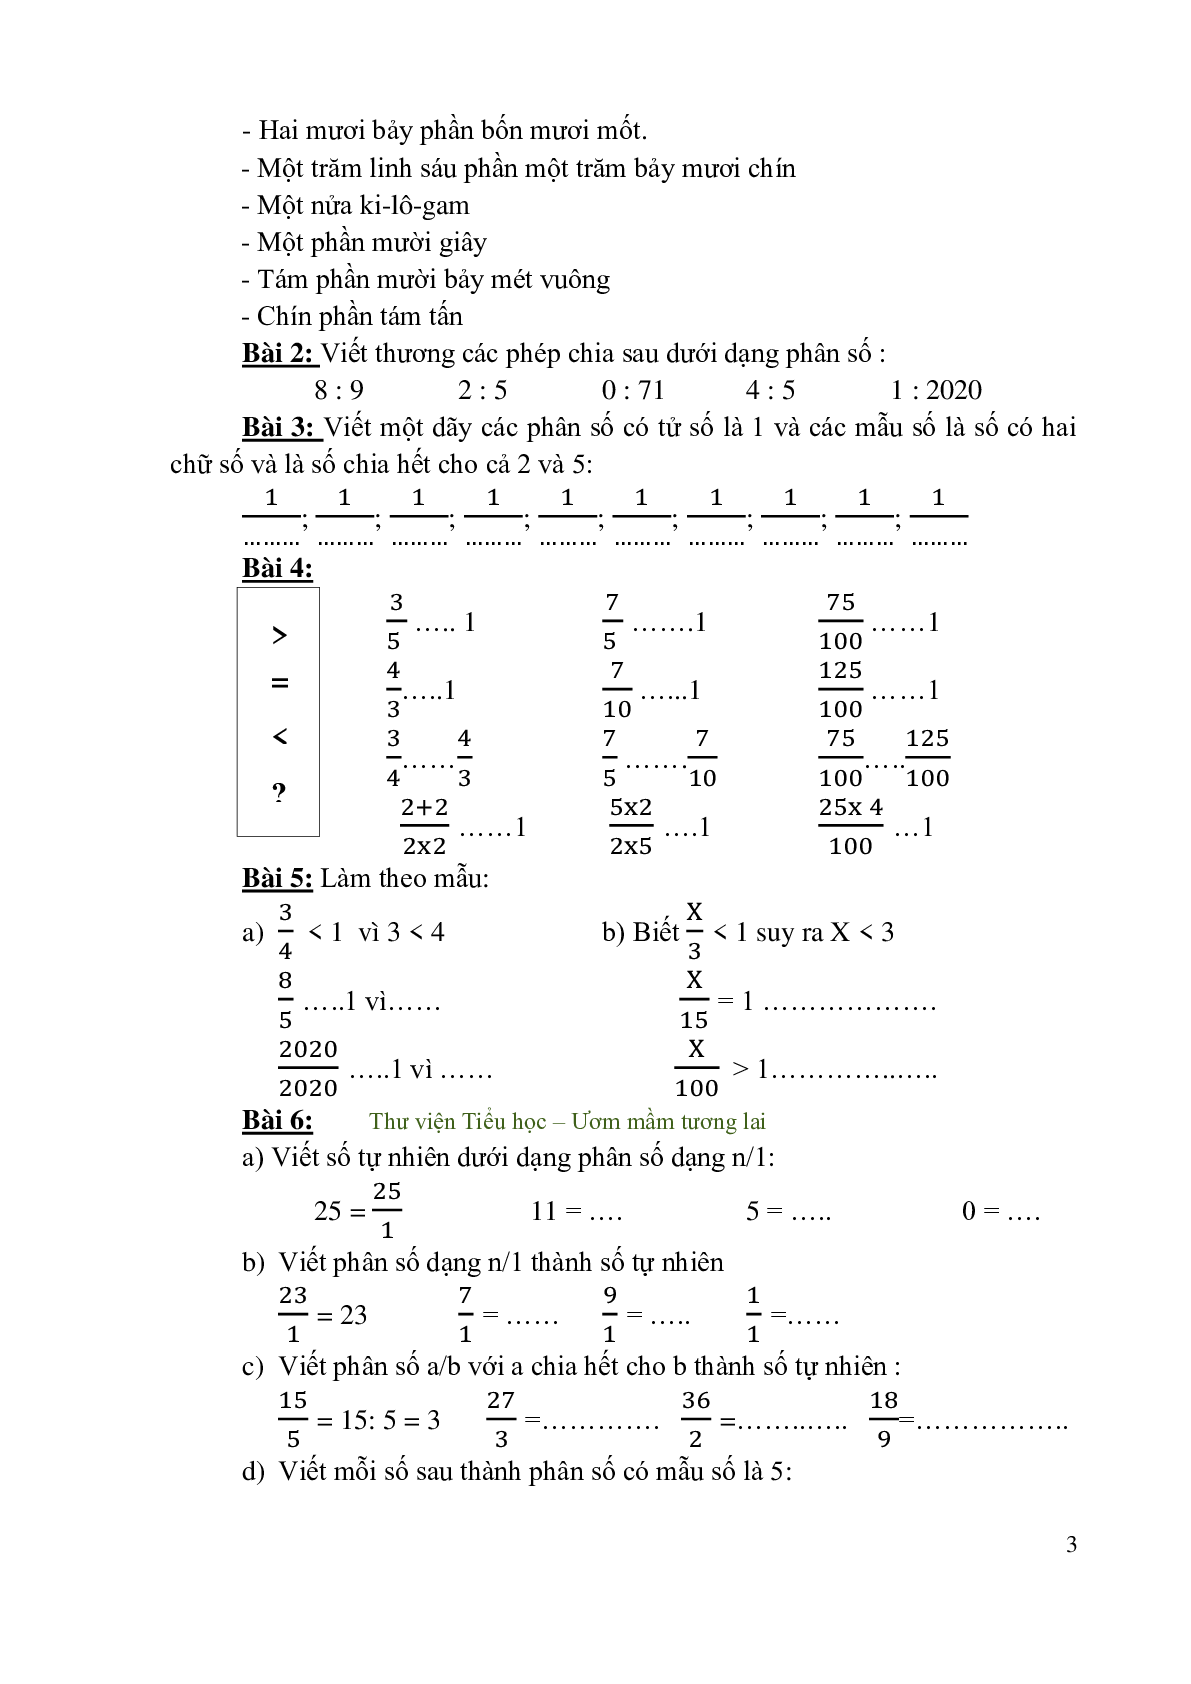 Dạng toán Phân số môn Toán lớp 4 (trang 3)